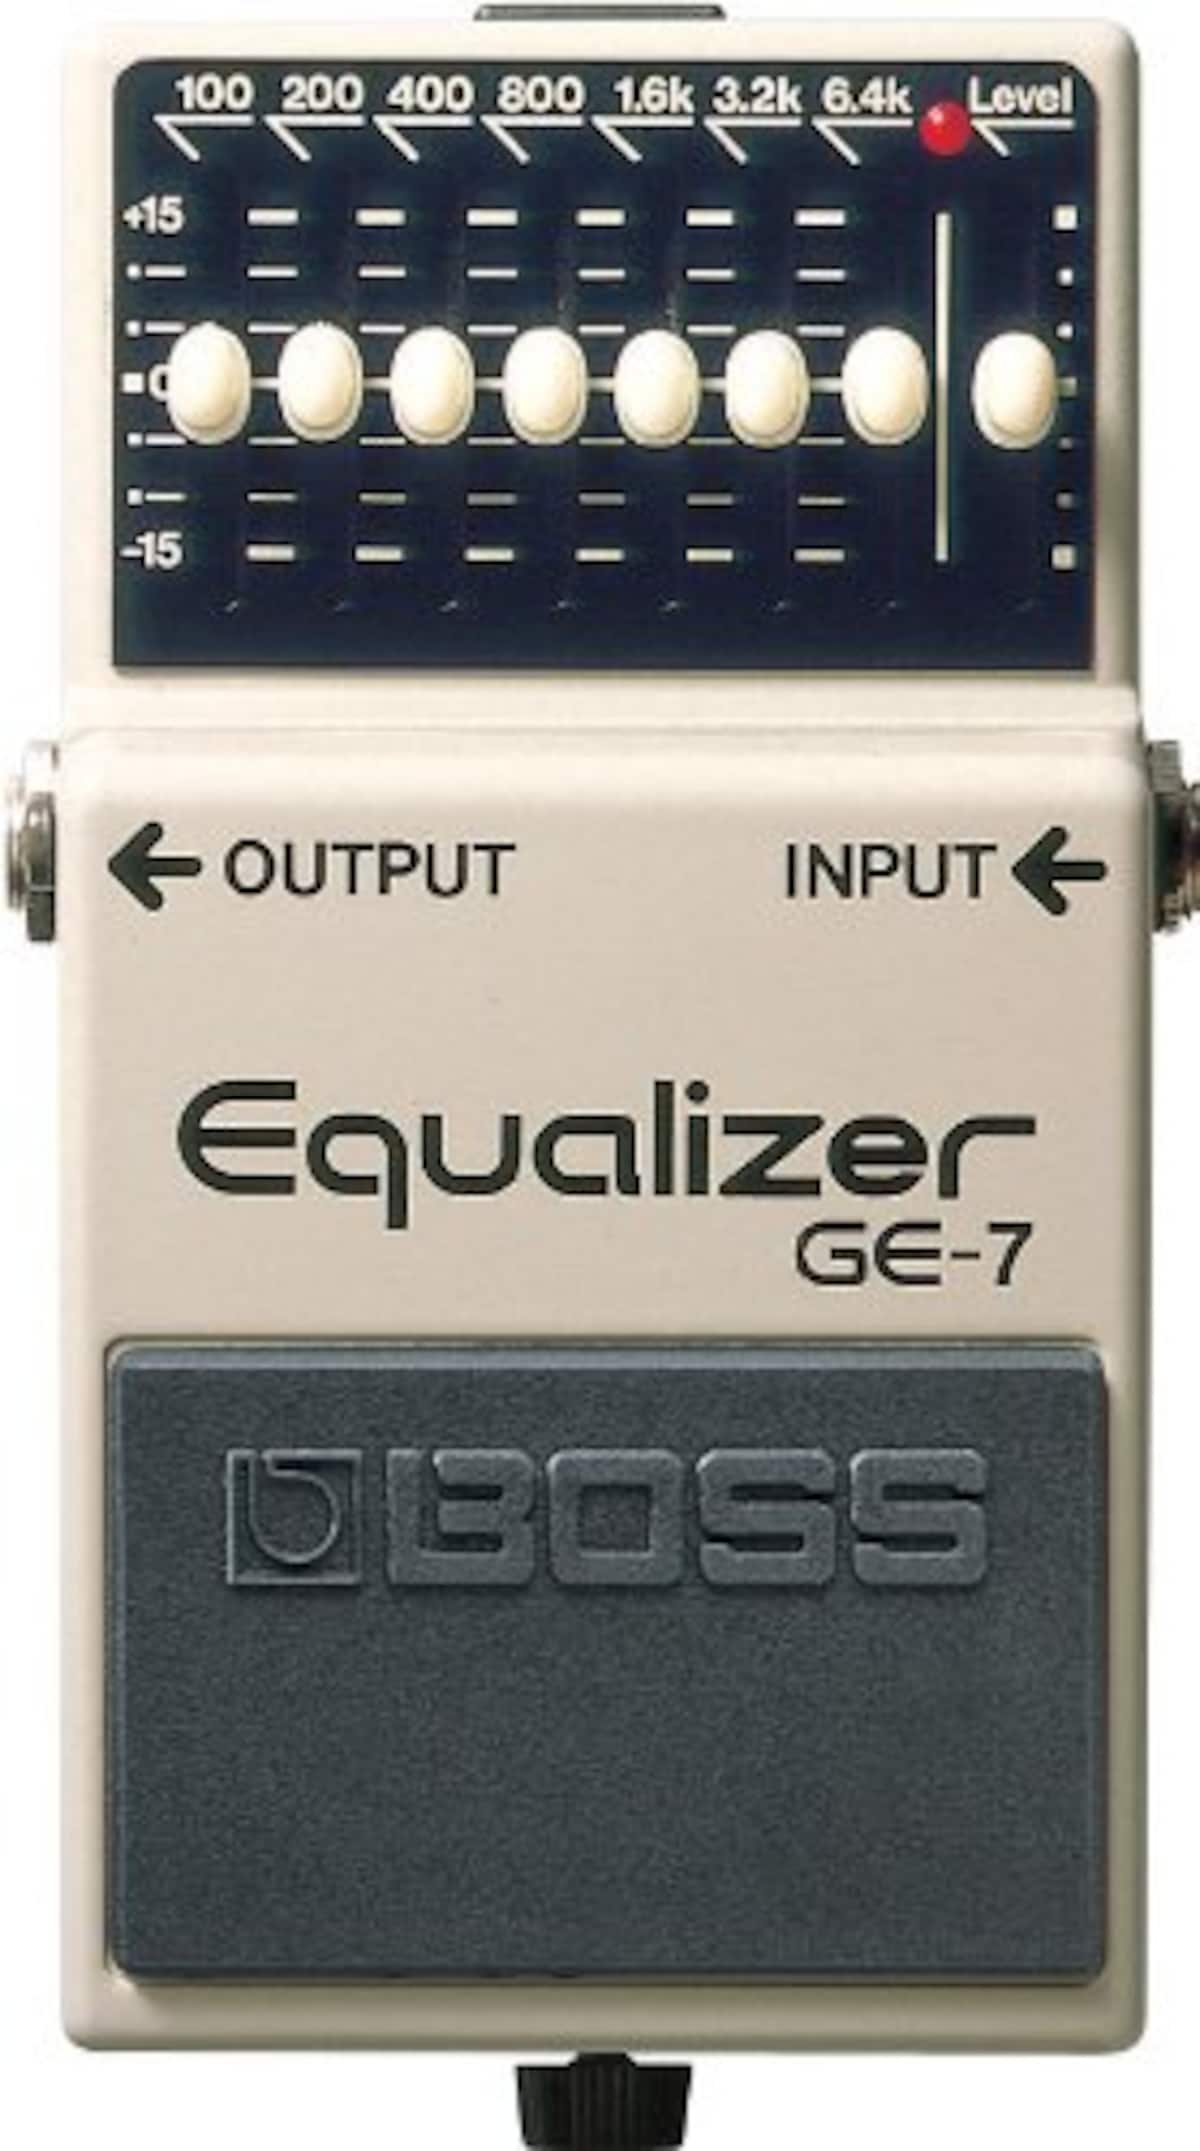  Equalizer  GE-7画像2 